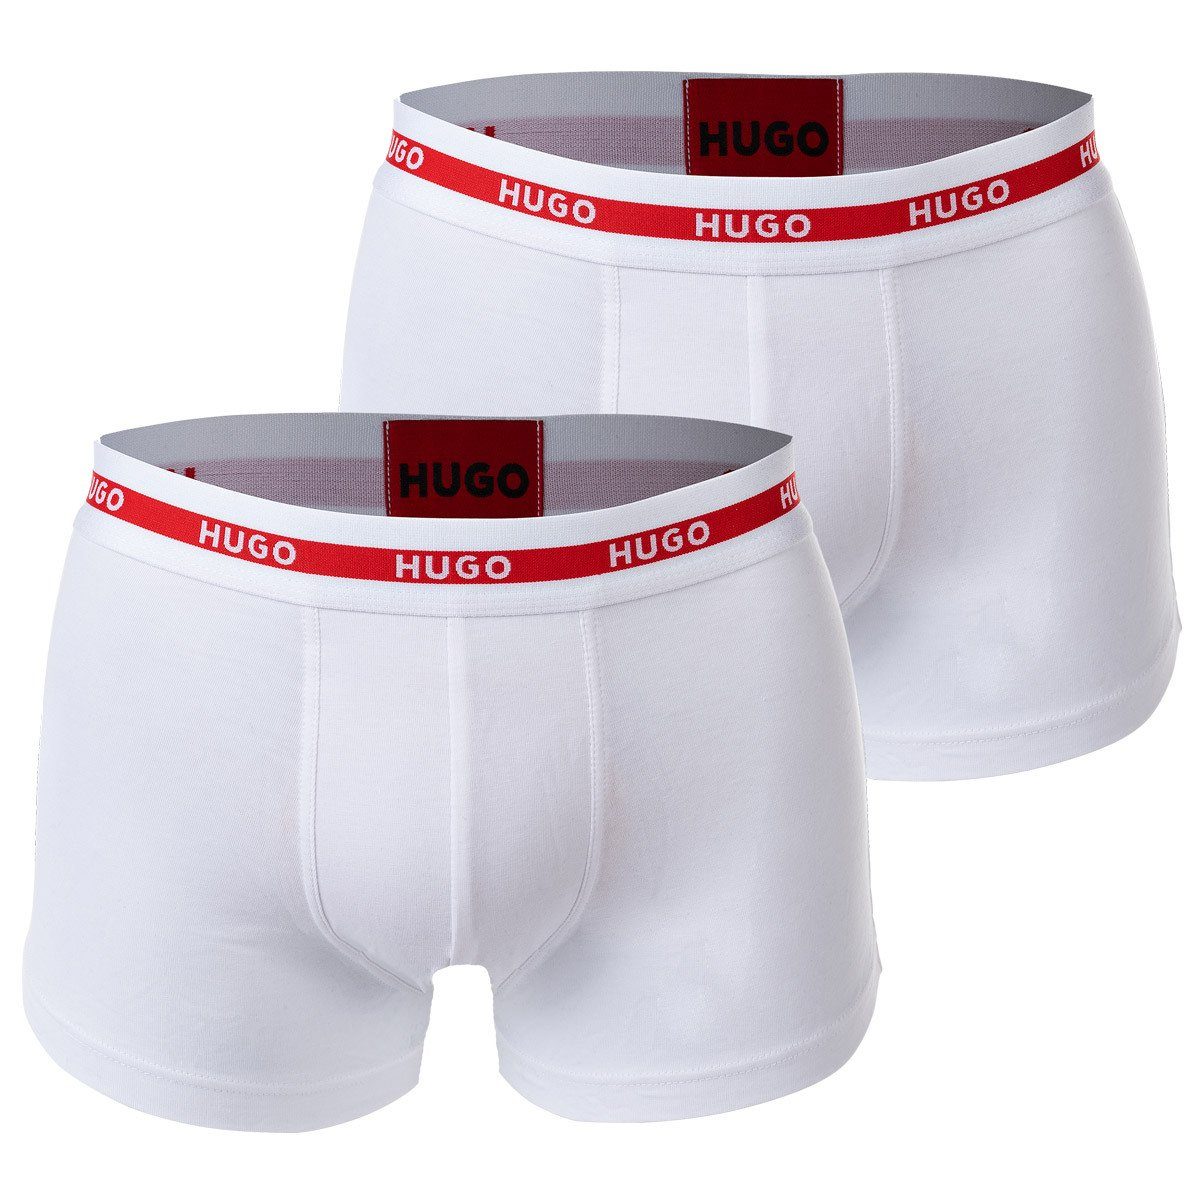 HUGO Boxer Herren Boxer Shorts, 2er Pack - Trunks Twin Pack Weiß